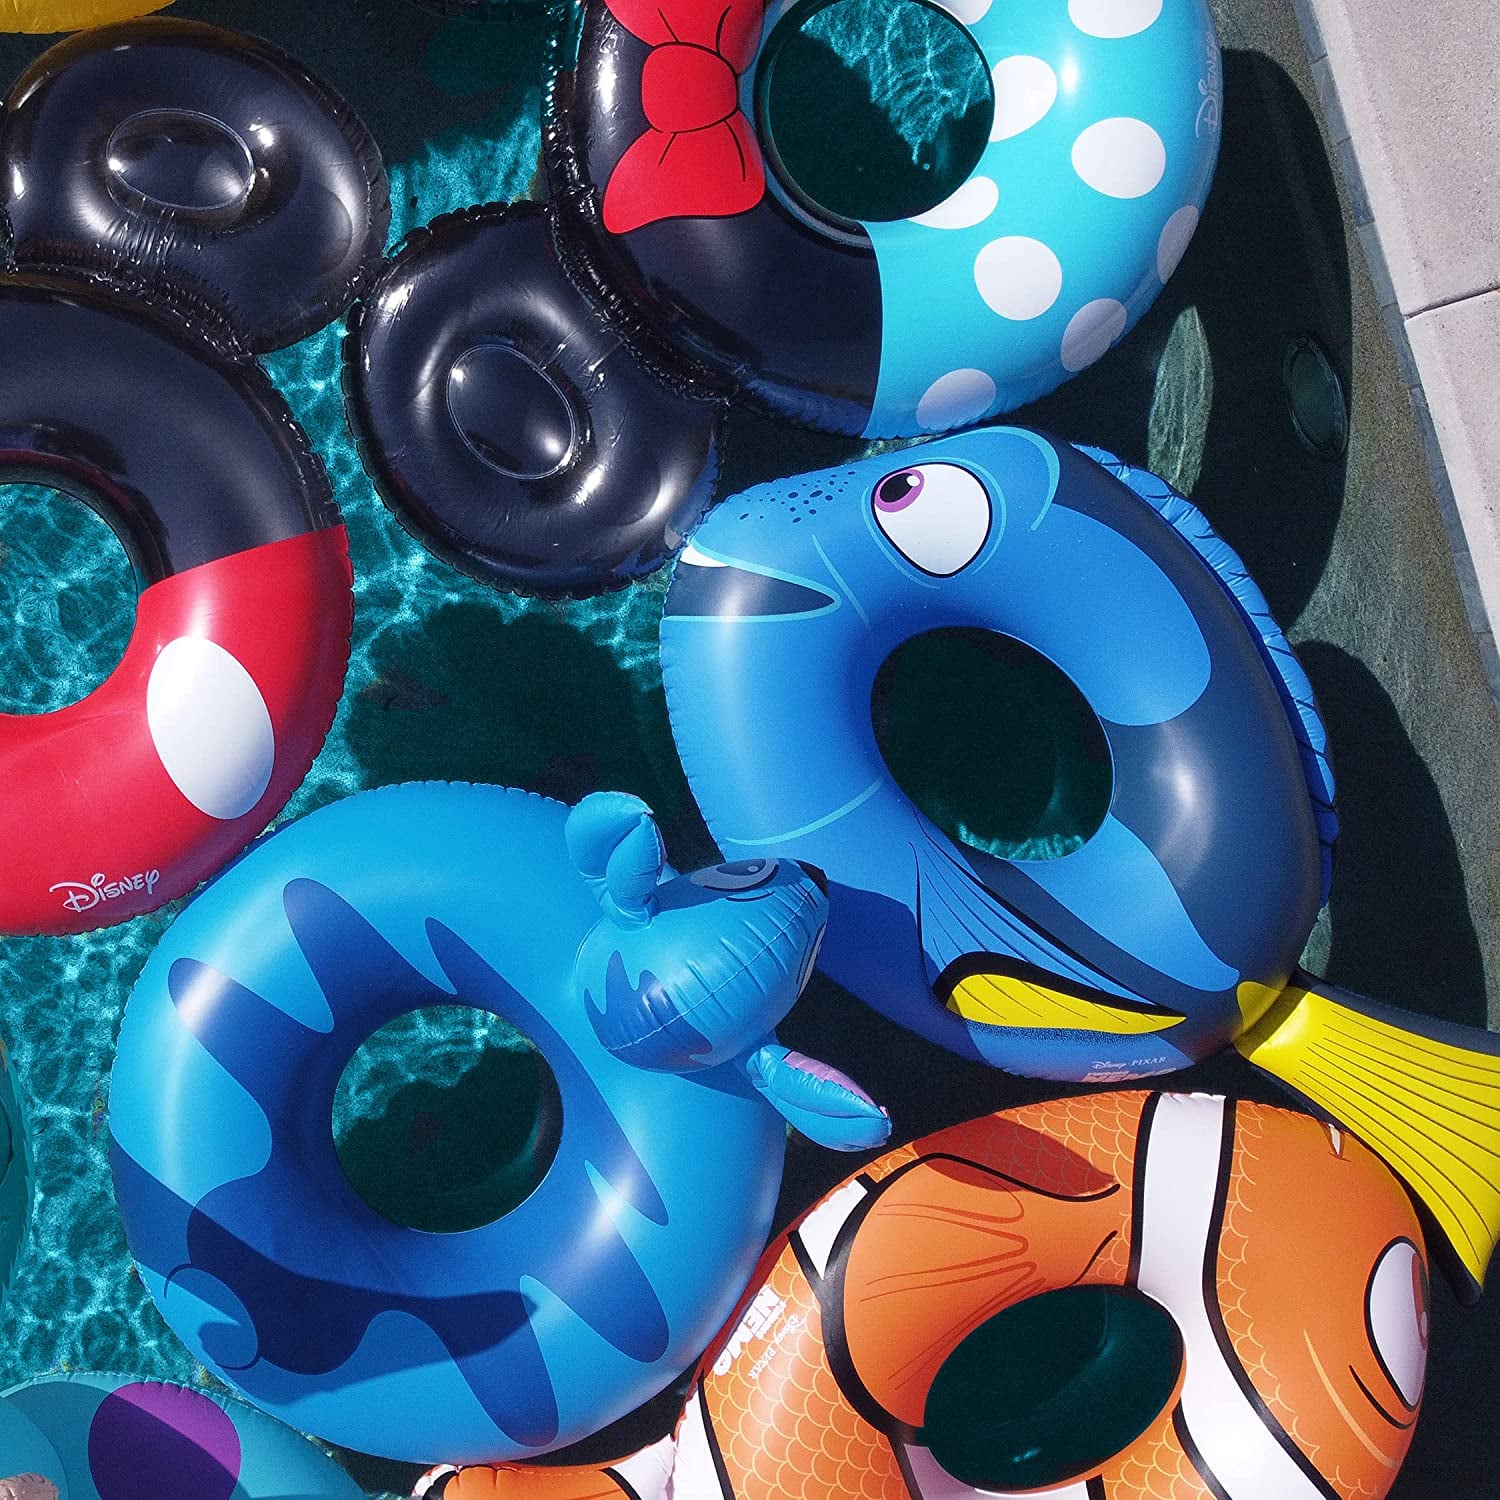 Disney Pixar Monsters Inc Pool Float - Sulley